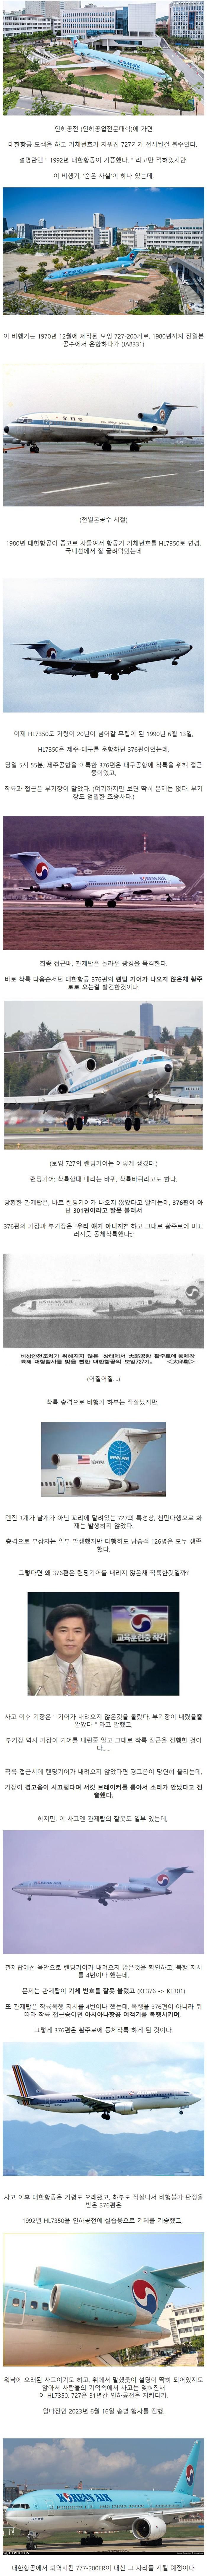 인하공전에 전시된 727기의 비밀